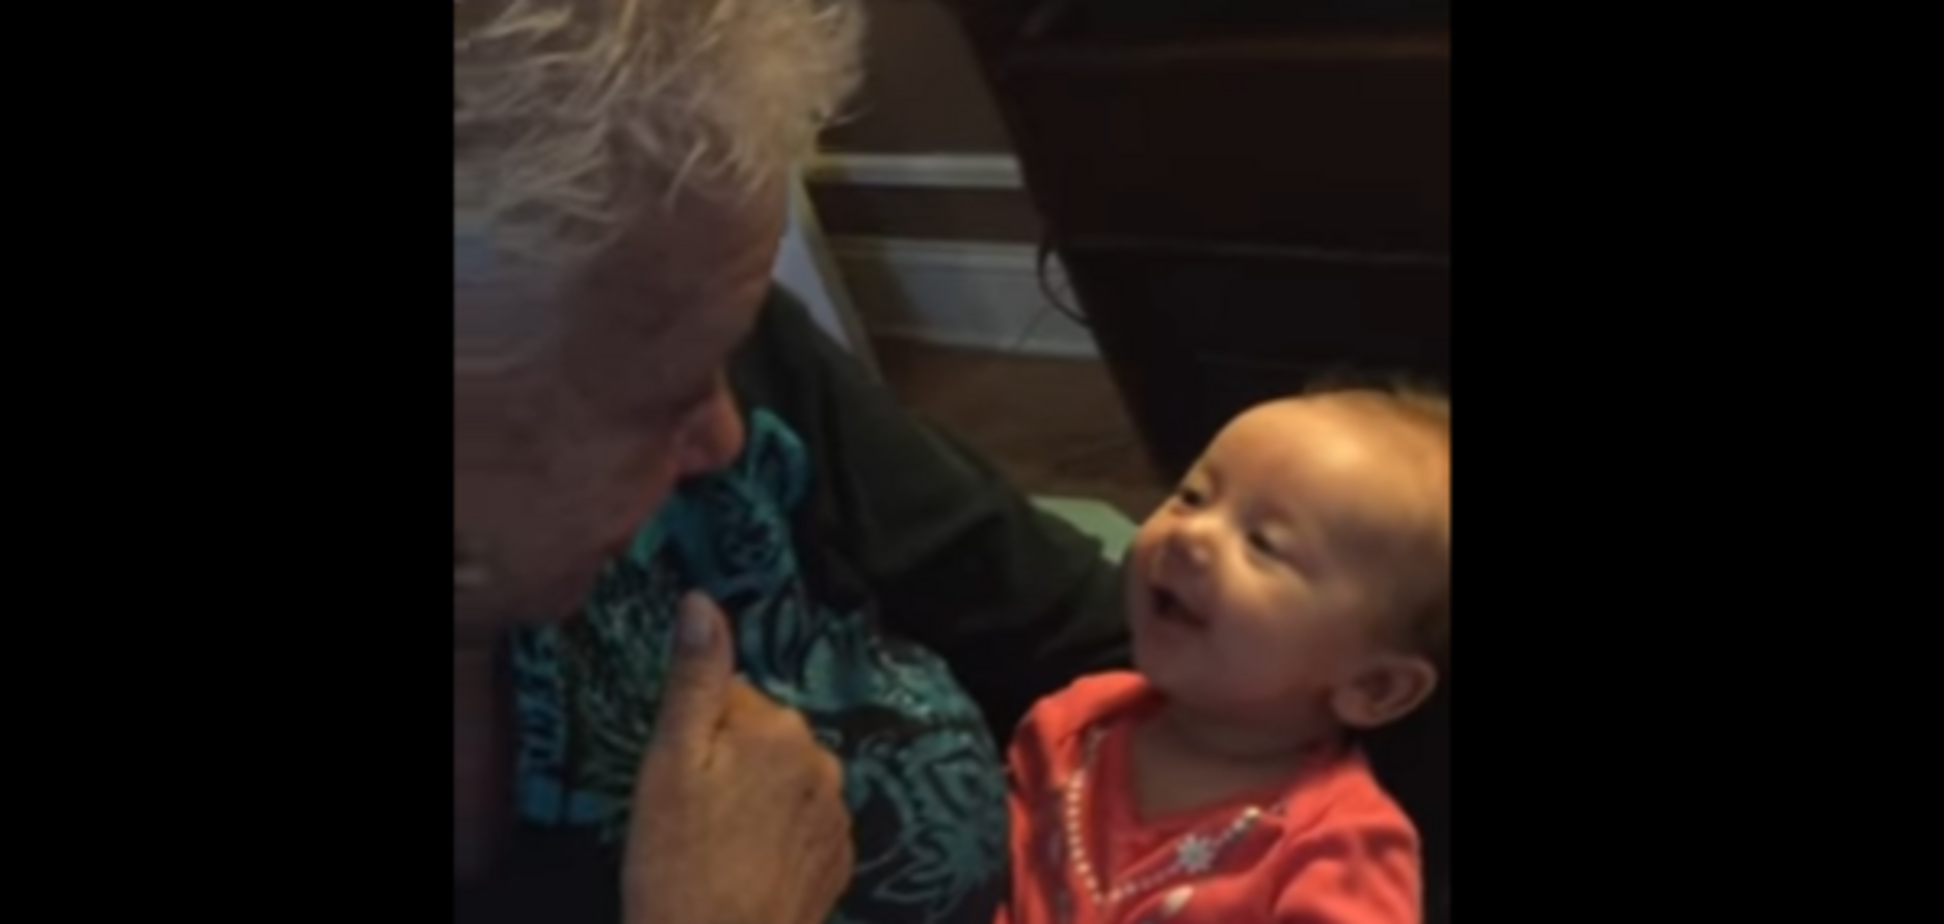 Сеть покорило видео, на котором глухая бабушка учит младенца языку жестов